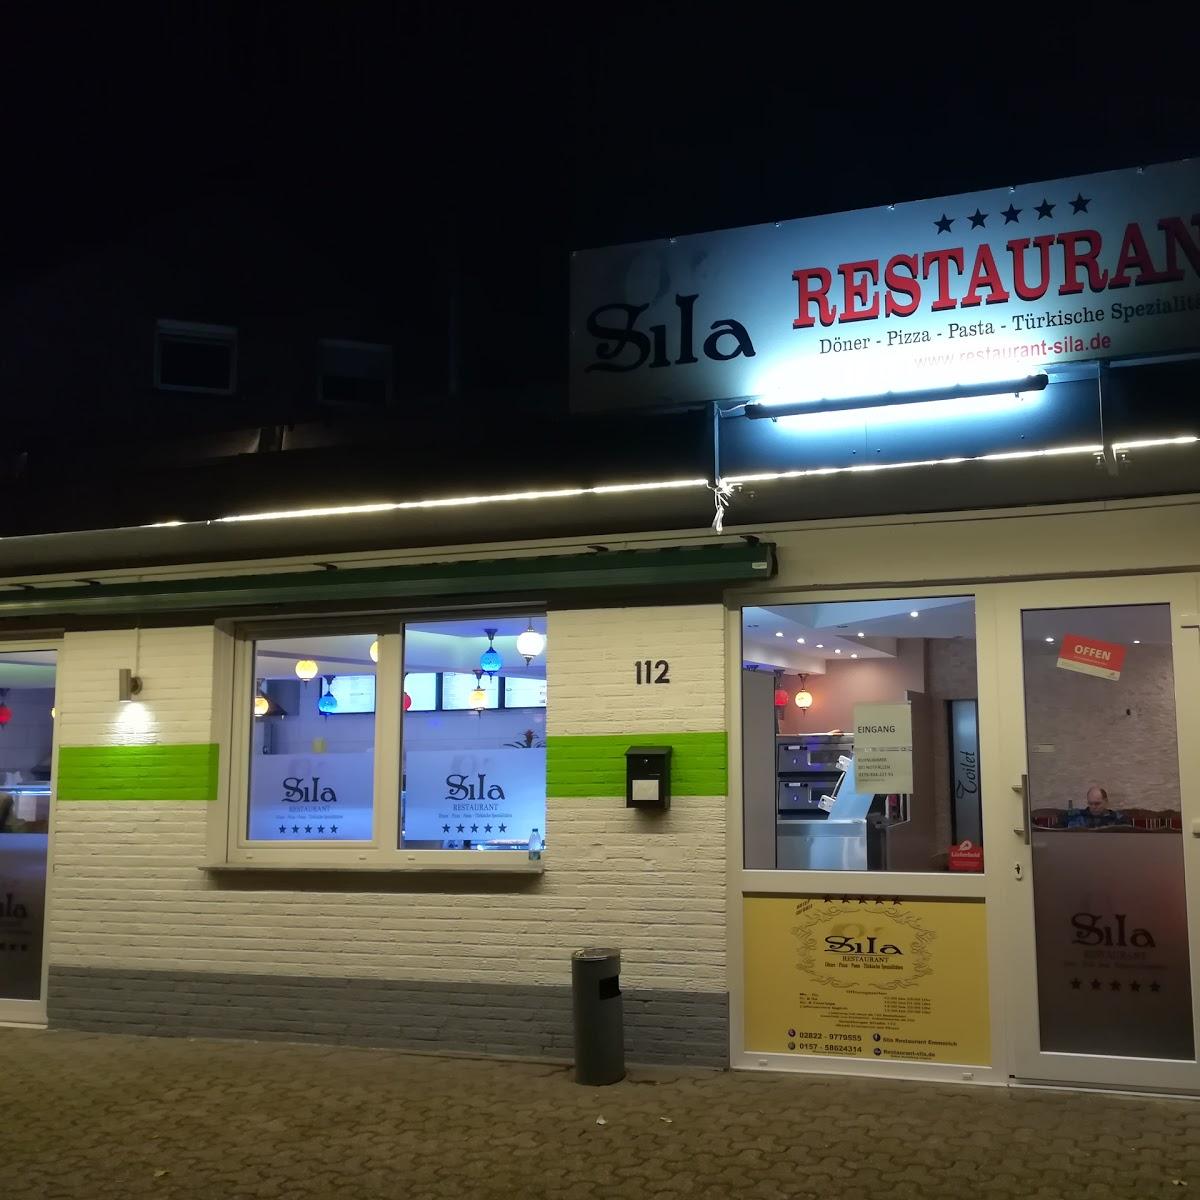 Restaurant "Sla Restaurant" in Emmerich am Rhein